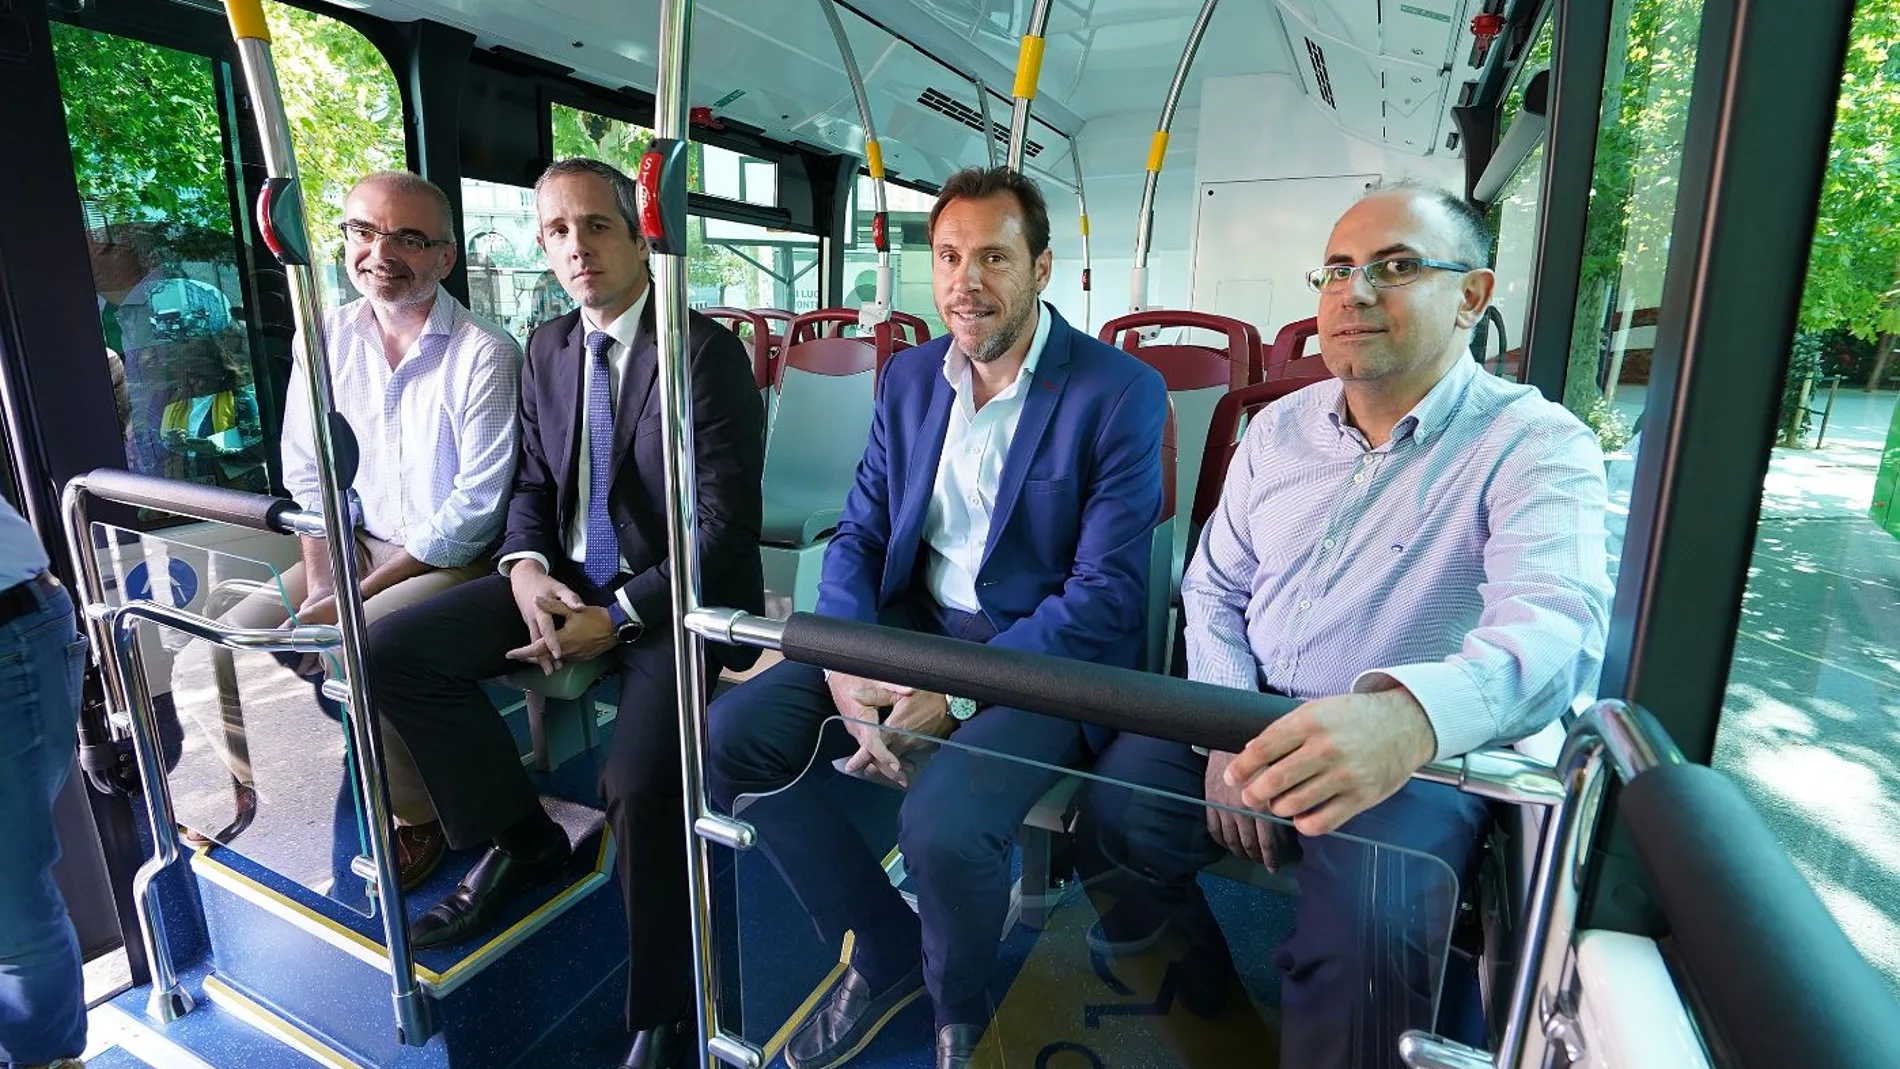 El alcalde de Valladlid, Óscar Puente, presenta los nuevos autobuses